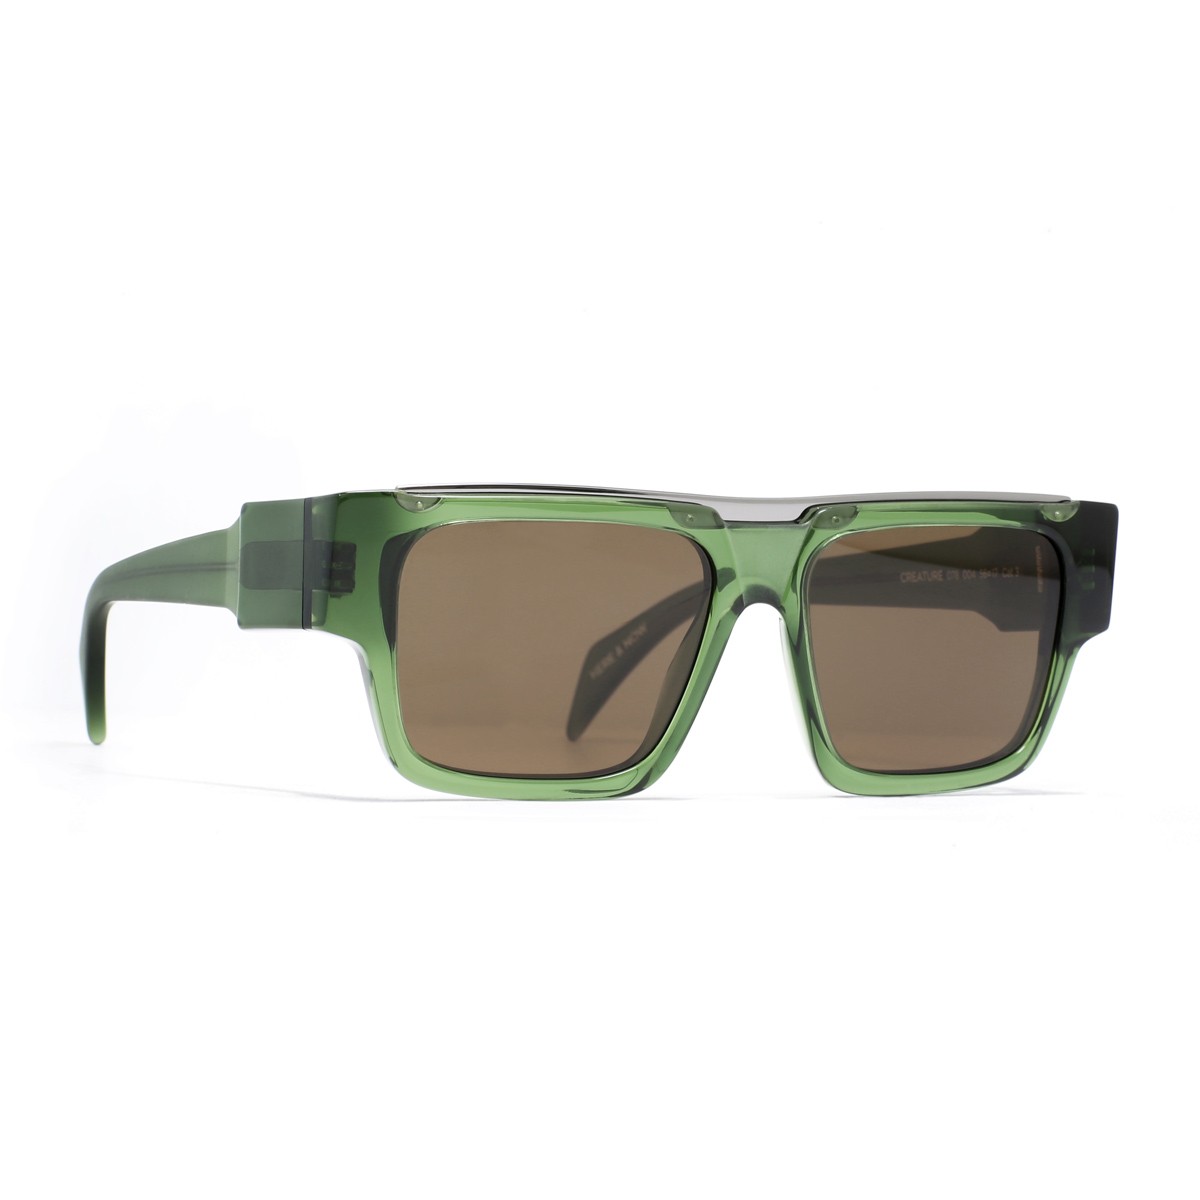 Siens Eye code 078 | Men's sunglasses